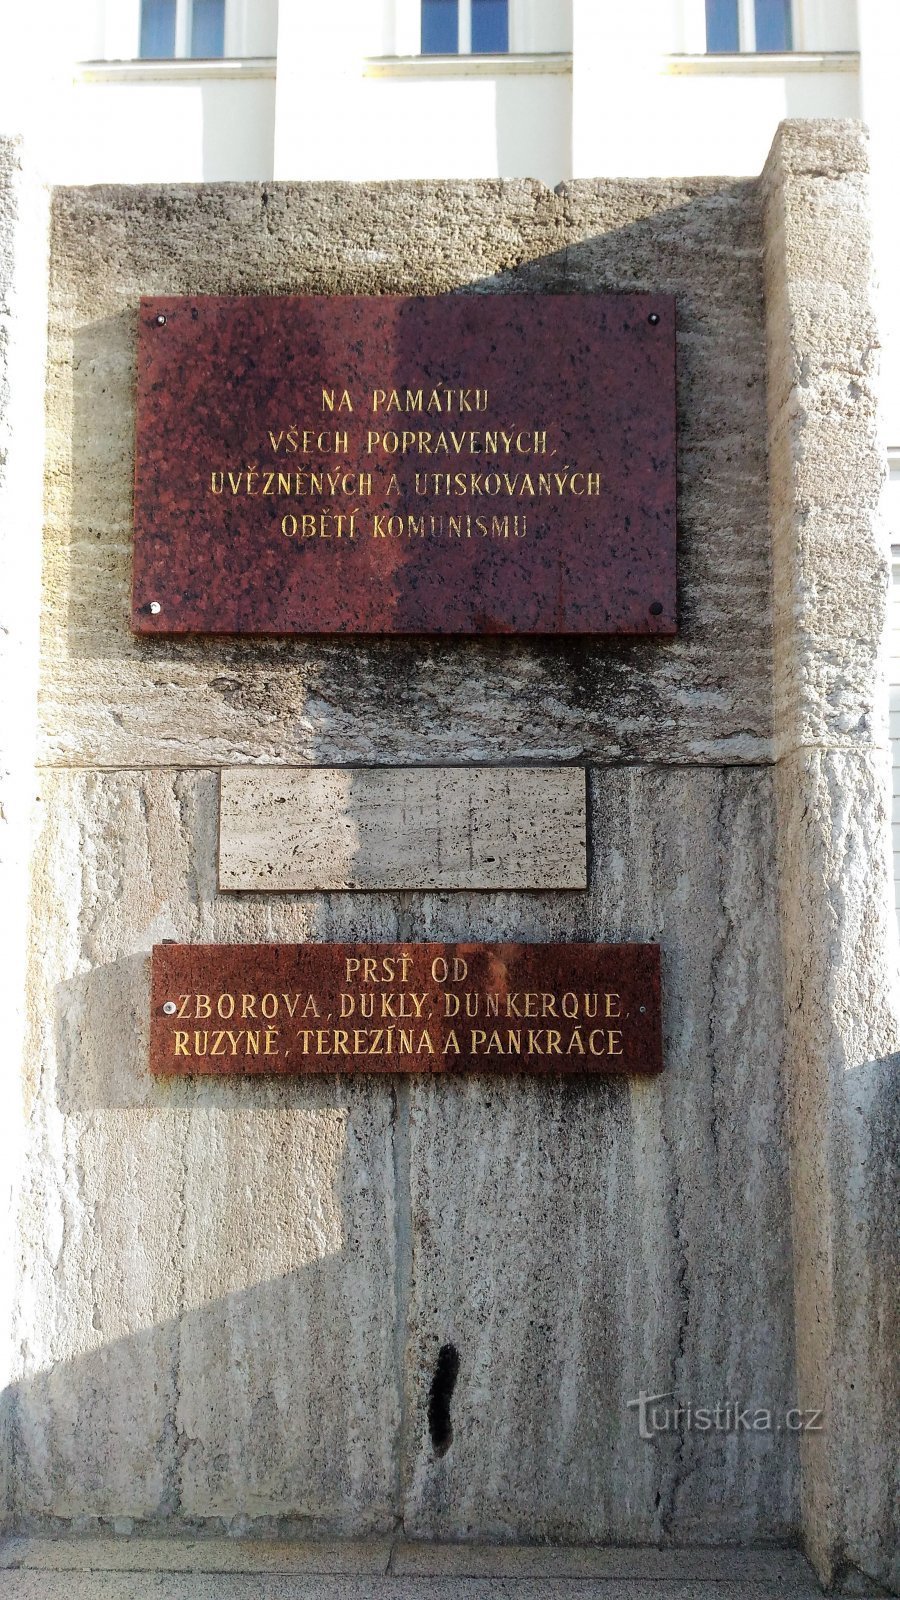 Monumento na escada em frente ao prédio do município em Teplice